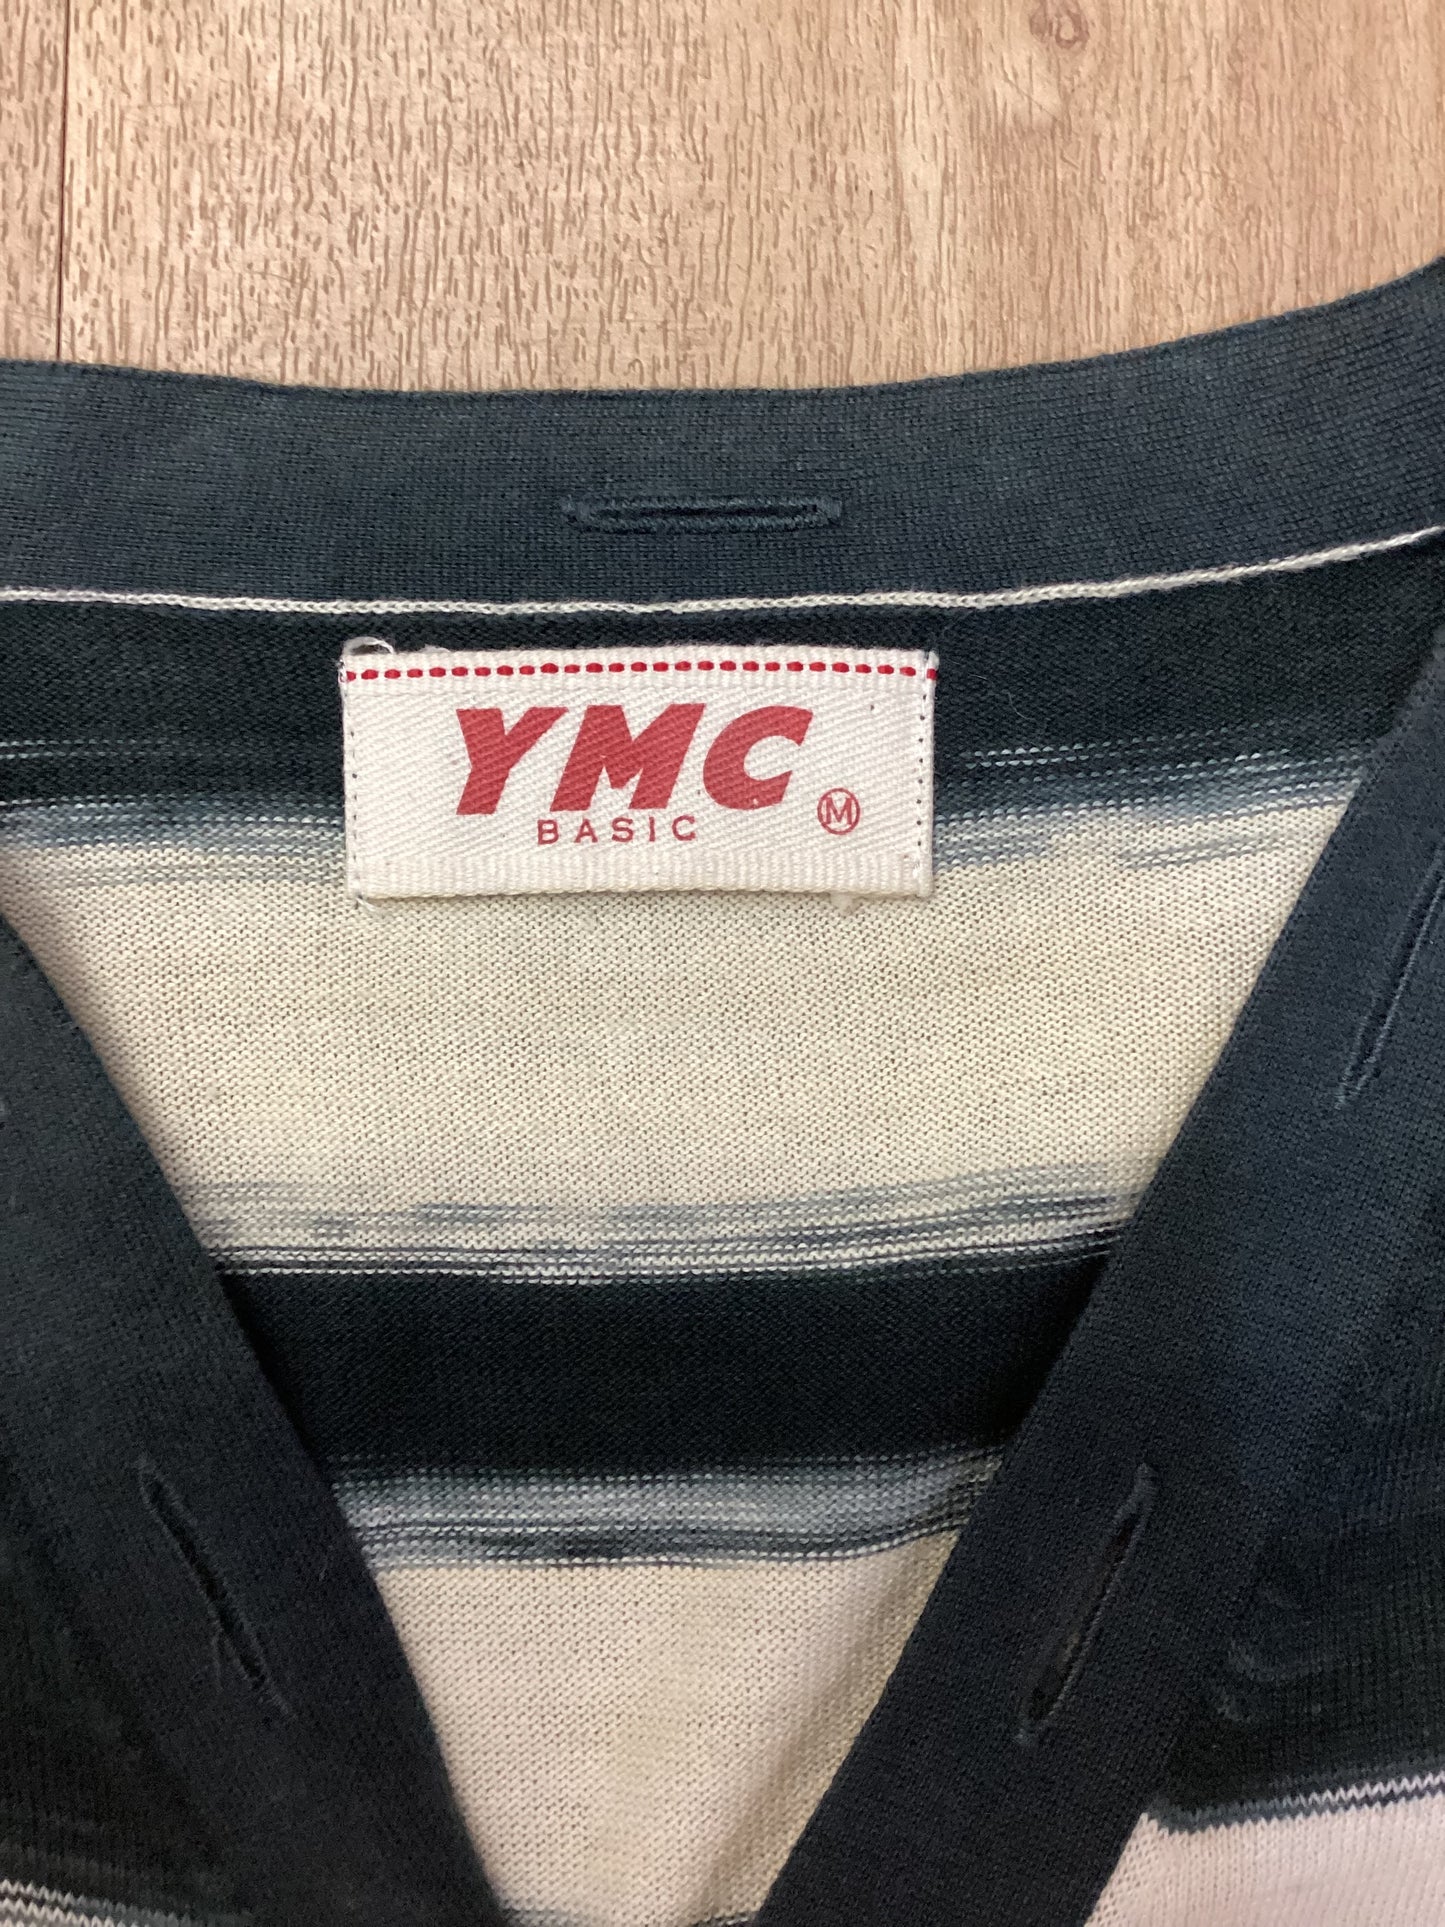 YMC Basic Black and White Striped Cardigan Size M